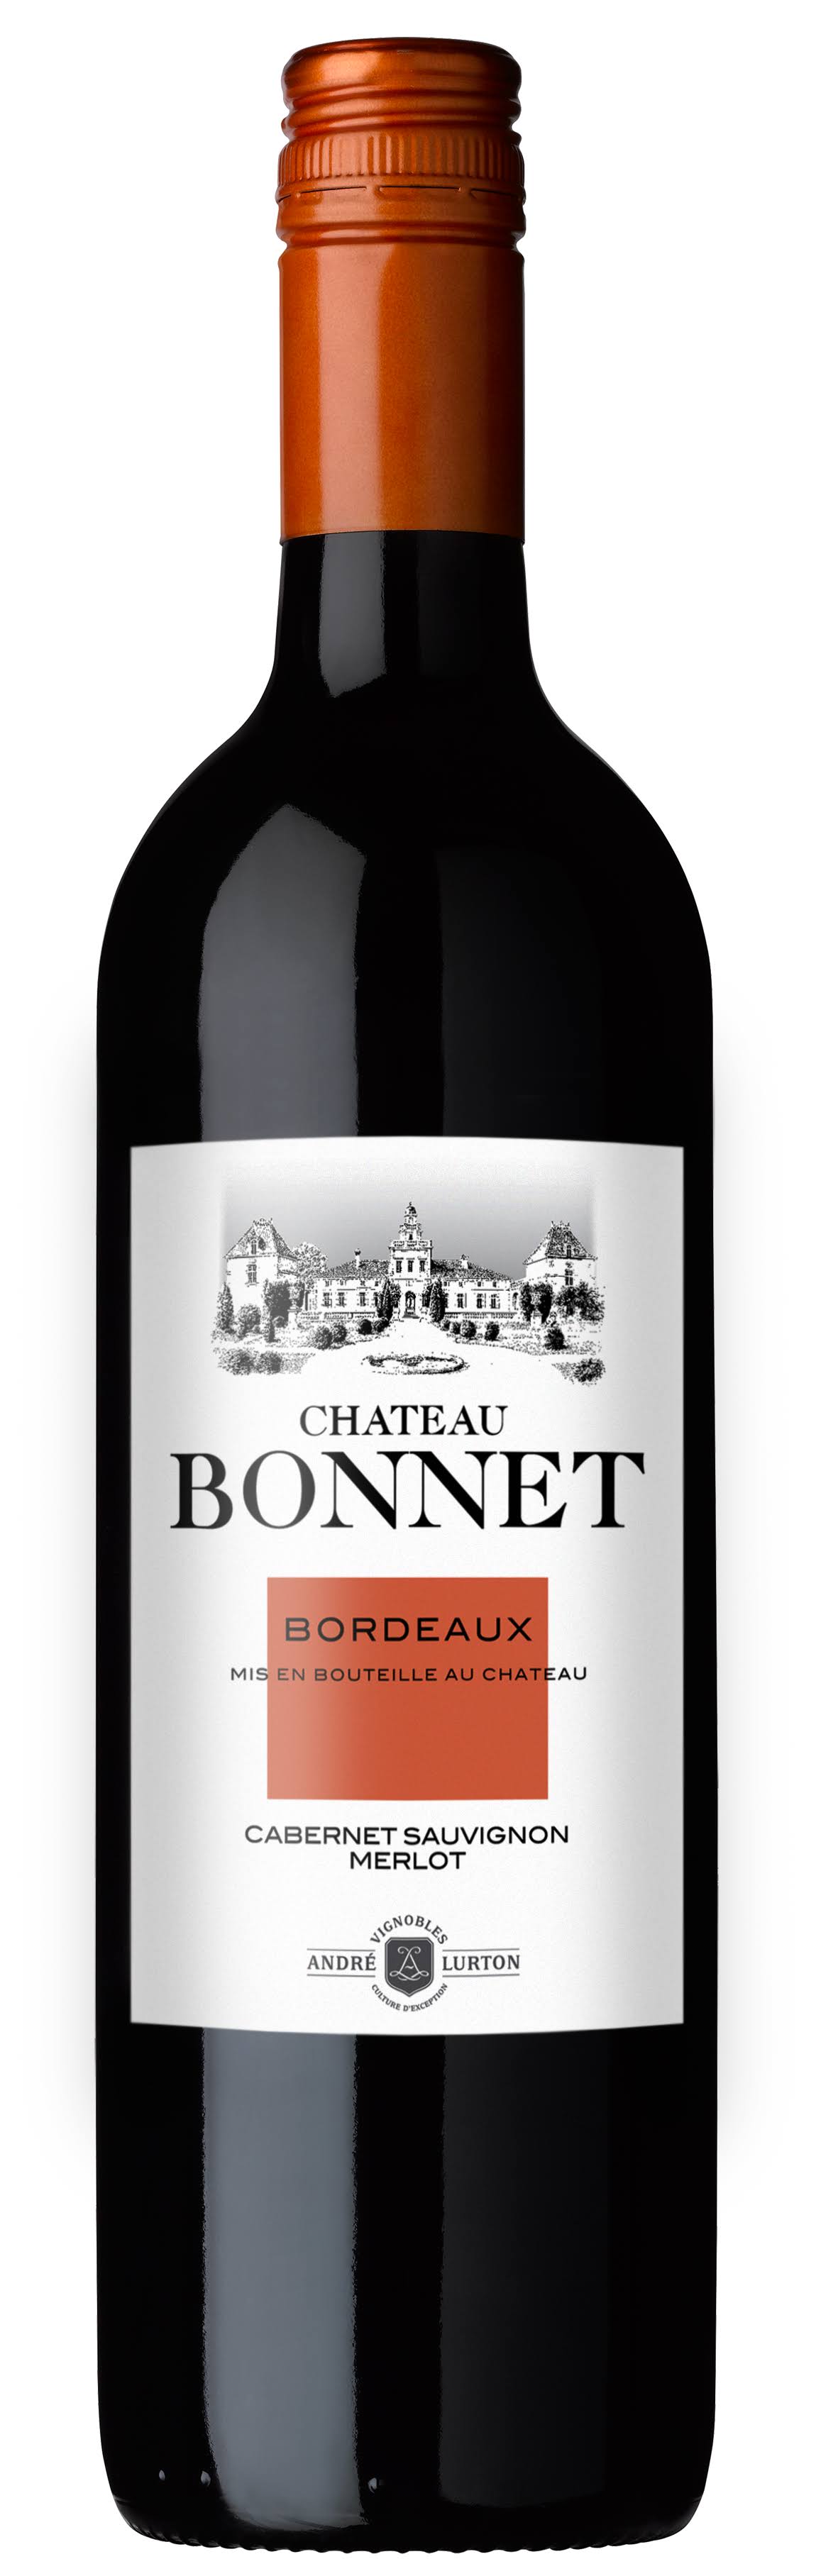 Chateau Bonnet Merlot Cabernet Sauvignon, Bordeaux, 2006 - 750 ml